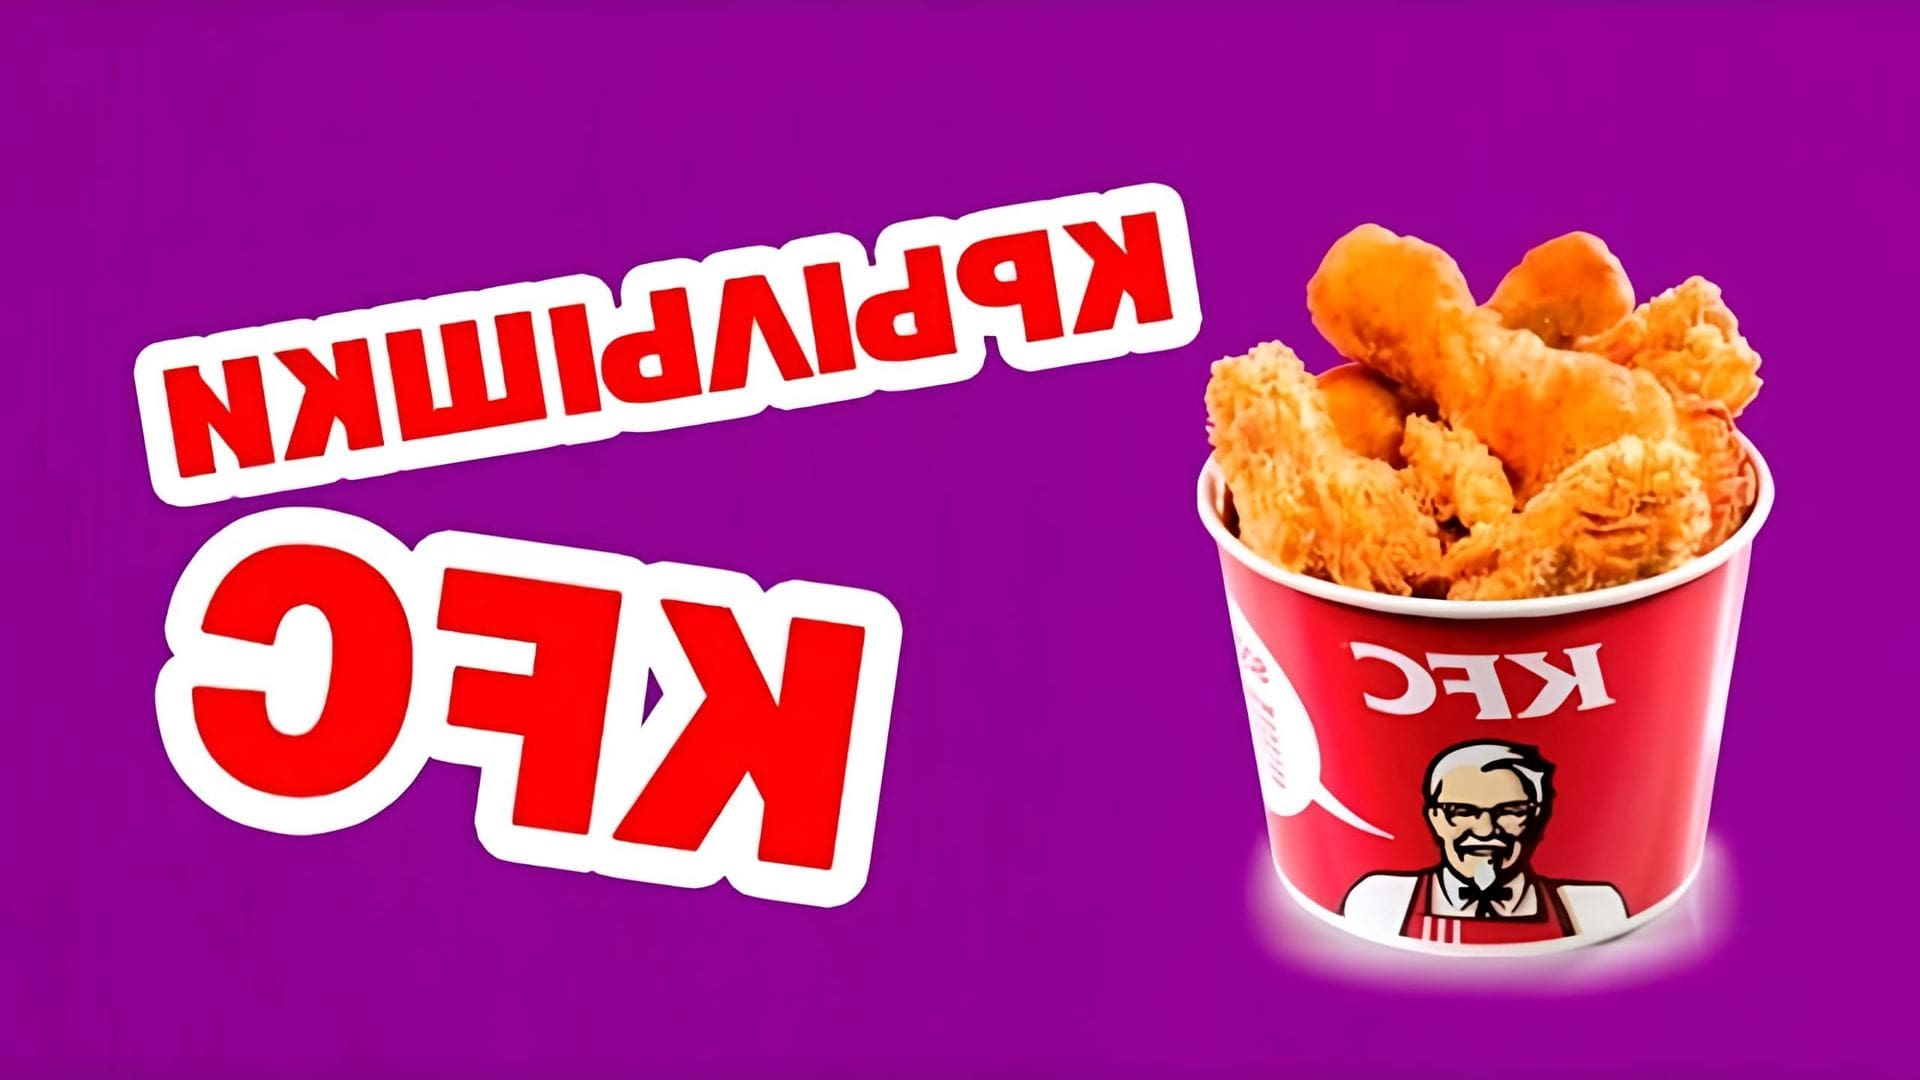 В этом видео демонстрируется рецепт приготовления крылышек KFC в домашних условиях